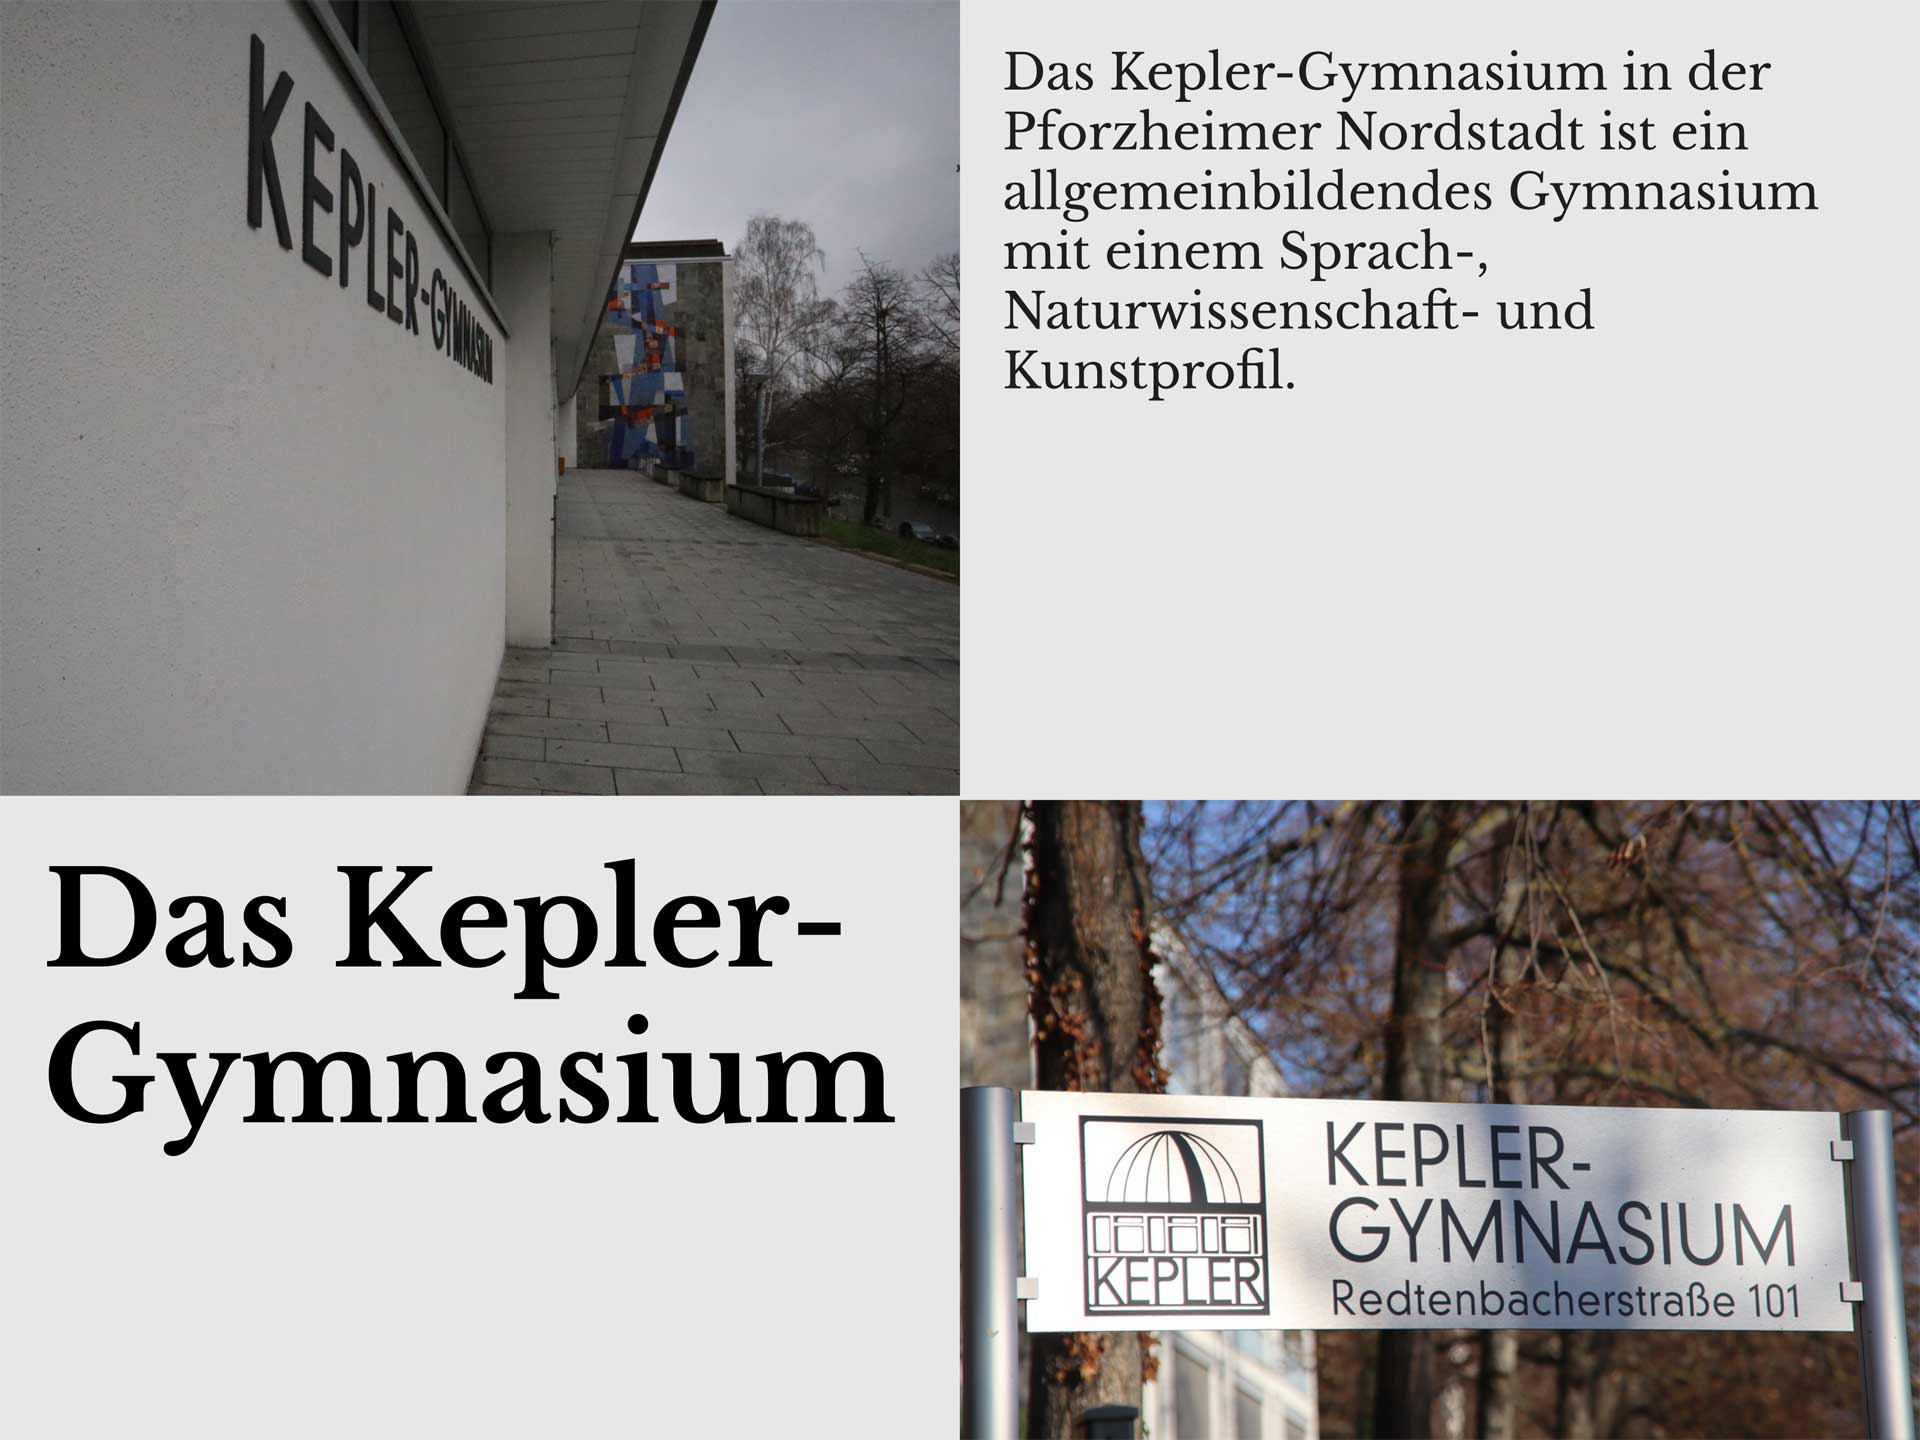 Kepler-Gymnasium